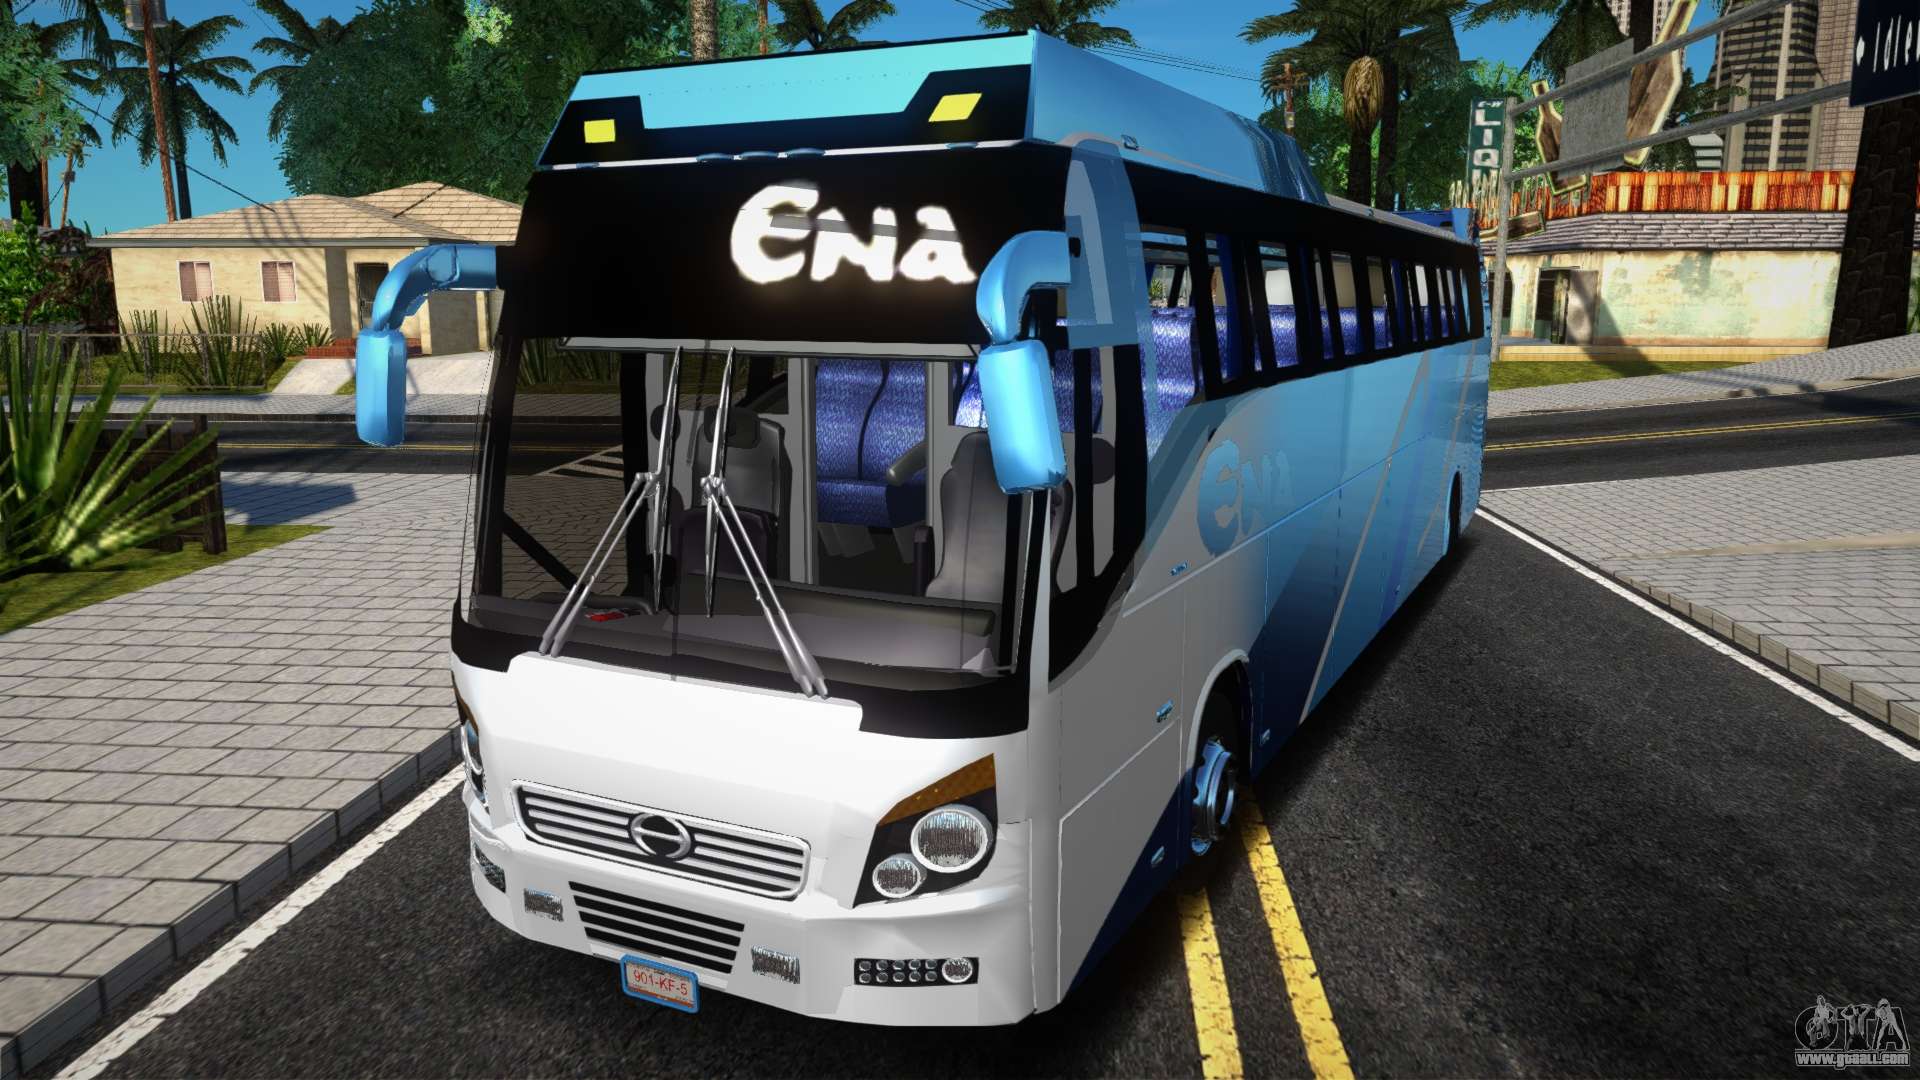 Proton Bus Simulator Playstation Ps3